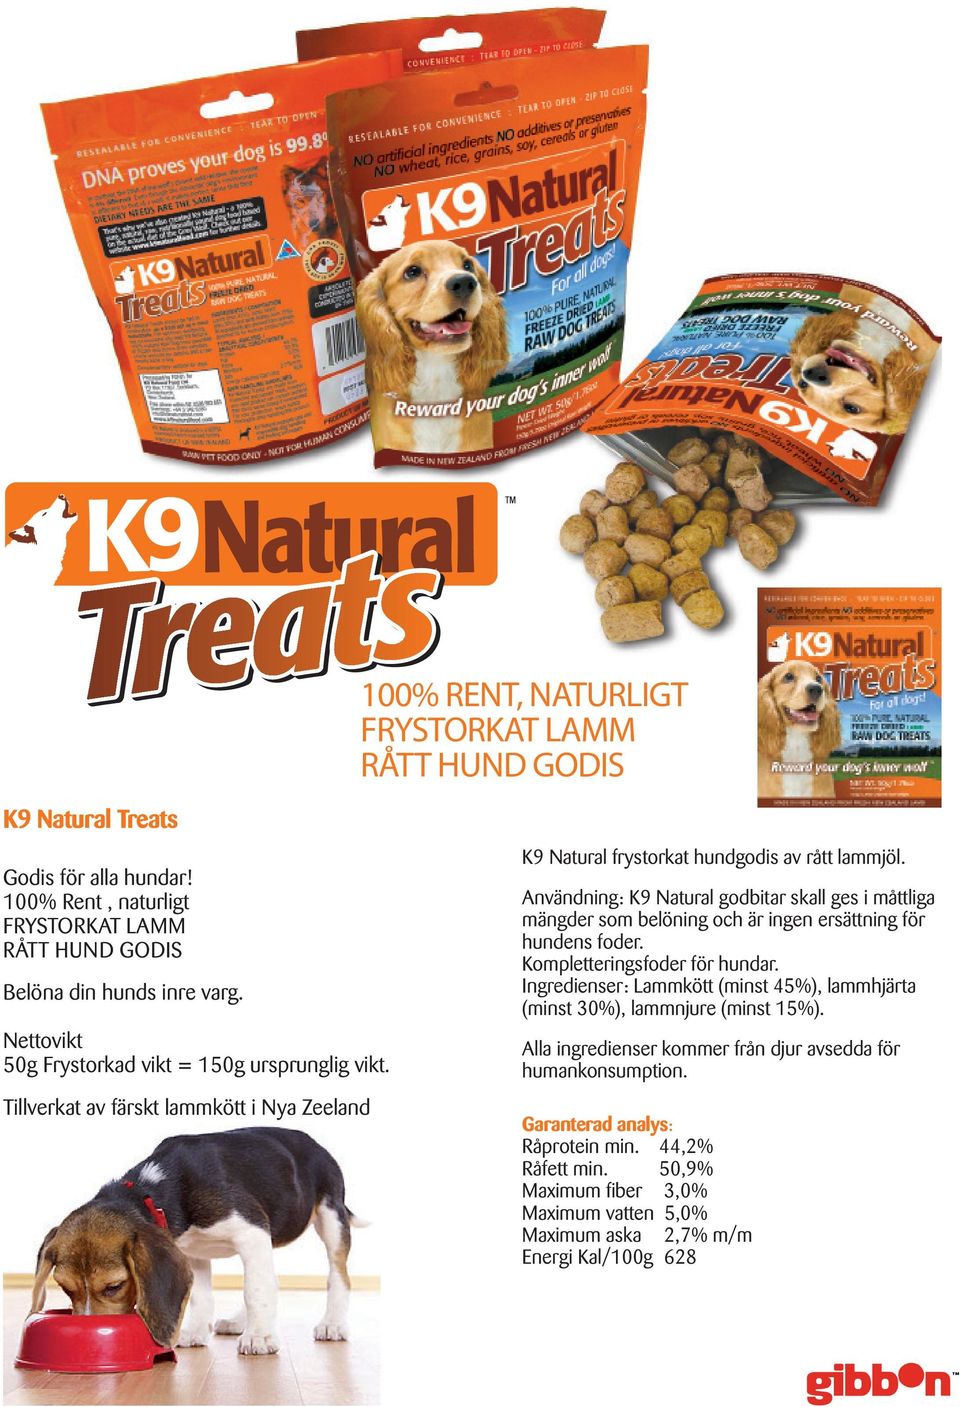 Användning: K9 Natural godbitar skall ges i måttliga mängder som belöning och är ingen ersättning för hundens foder. Kompletteringsfoder för hundar.